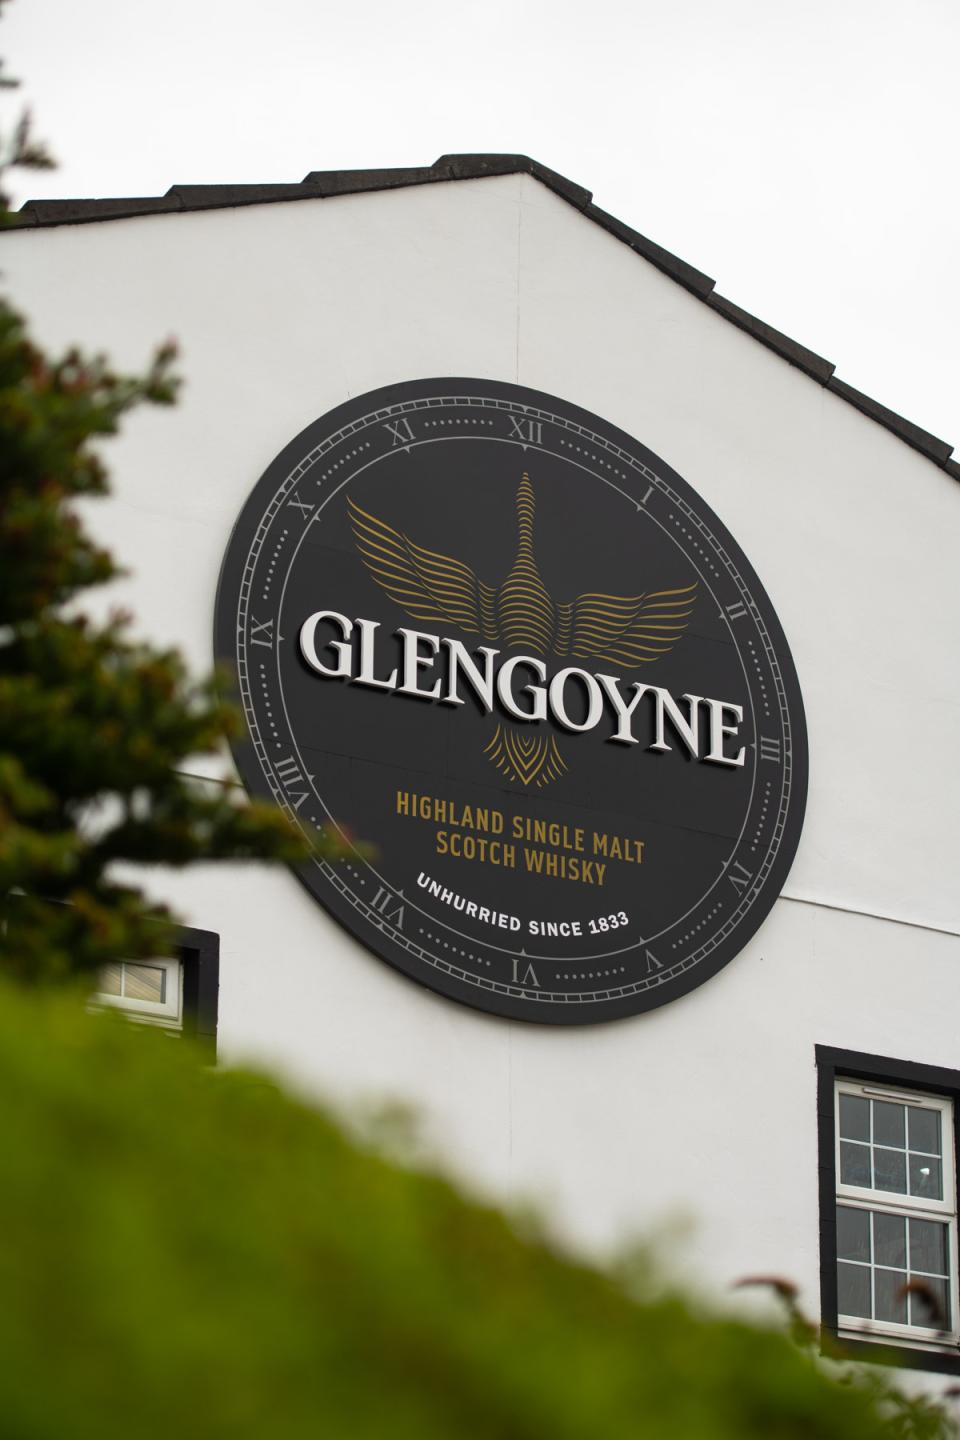 Glengoyne whisky distillery brand home